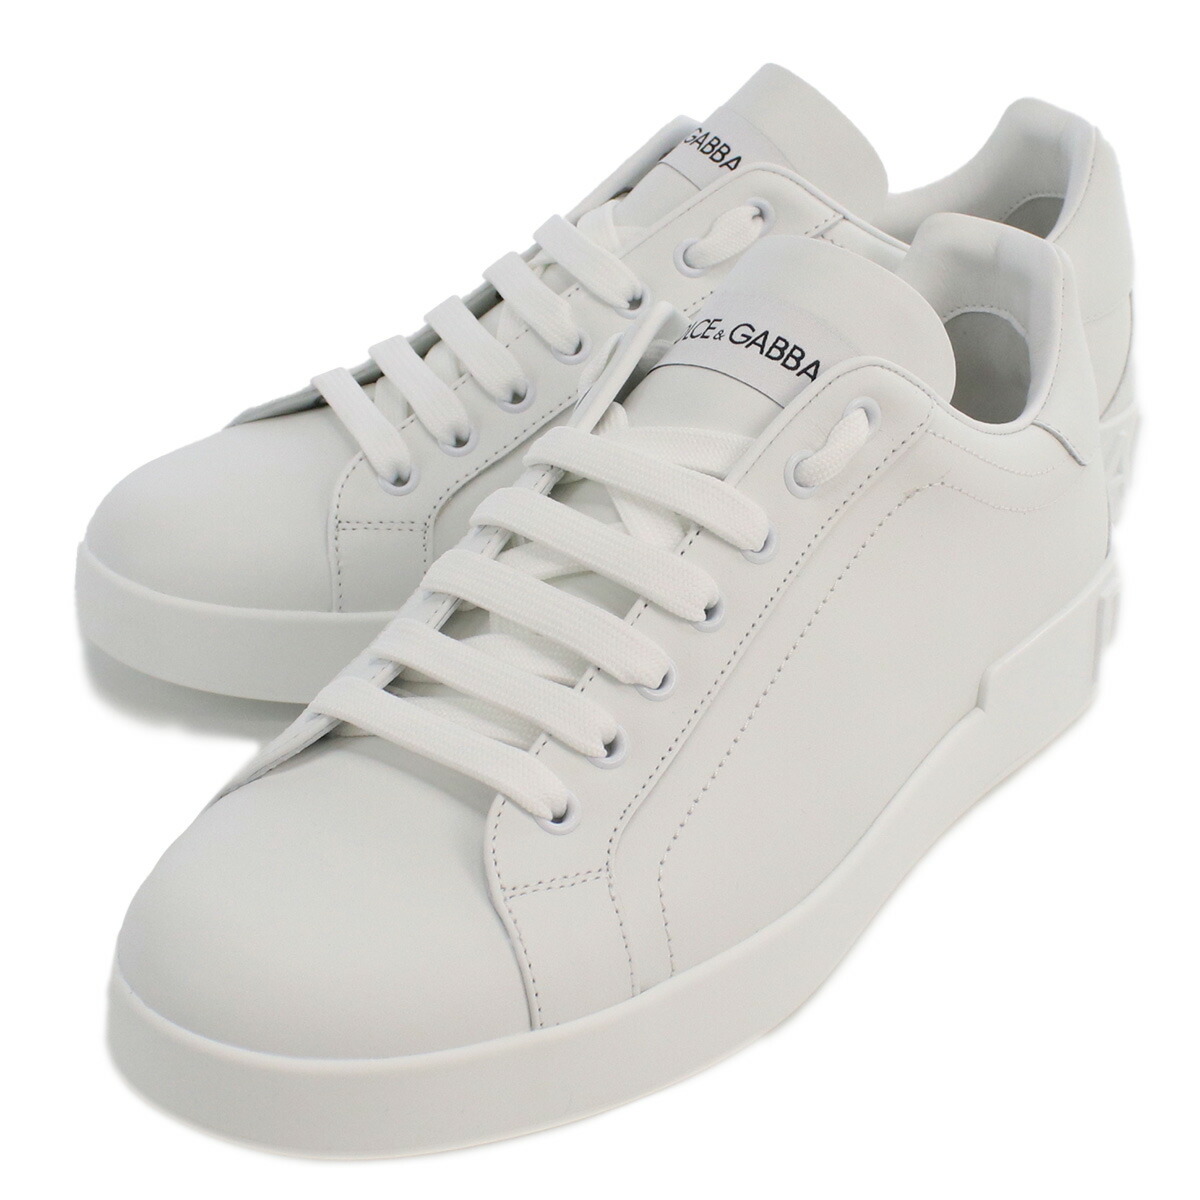 ドルチェ&ガッバーナ DOLCE&GABBANA  メンズ スニーカー 白 ブランド CS1772　A1065　80001 BIANCO ホワイト系 shoes-01